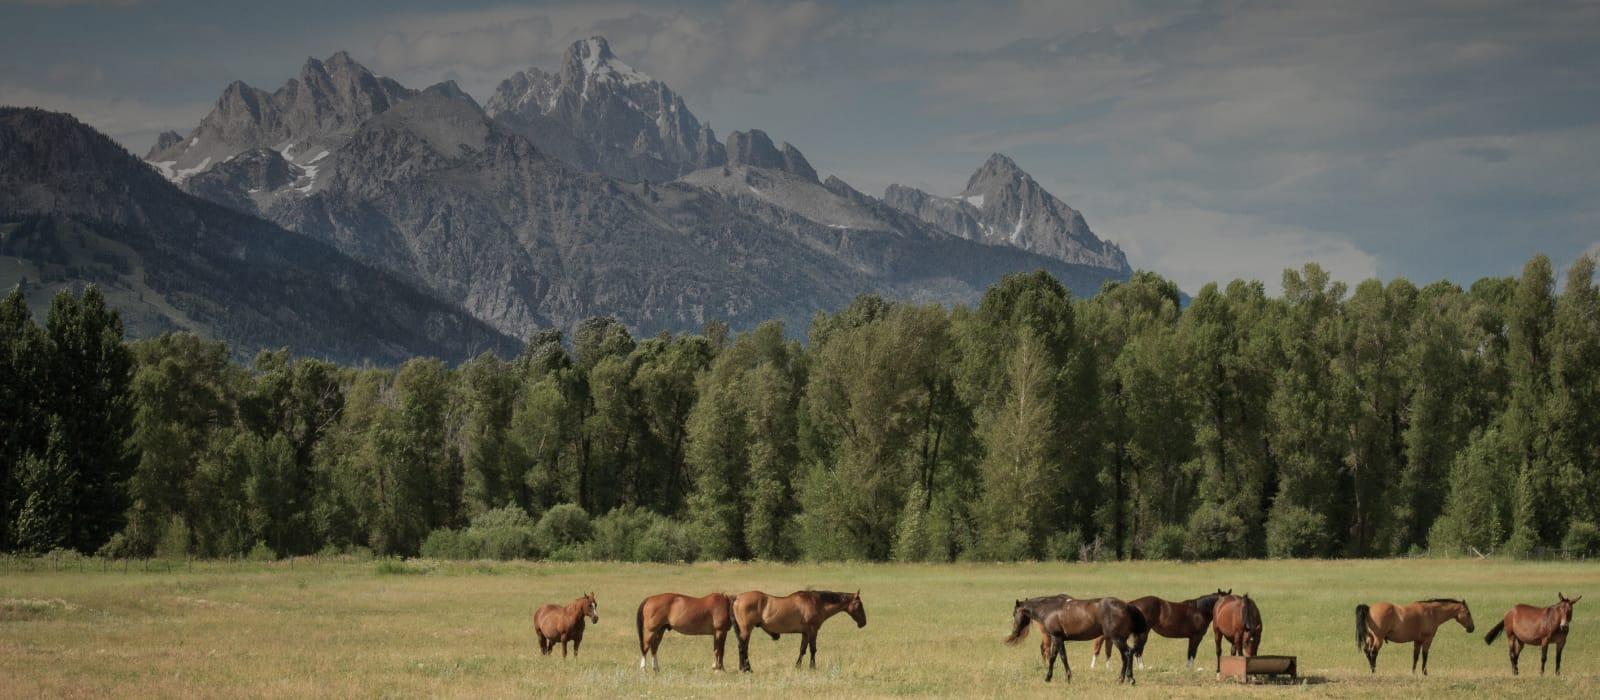 a herd of horses in an open mountain field.